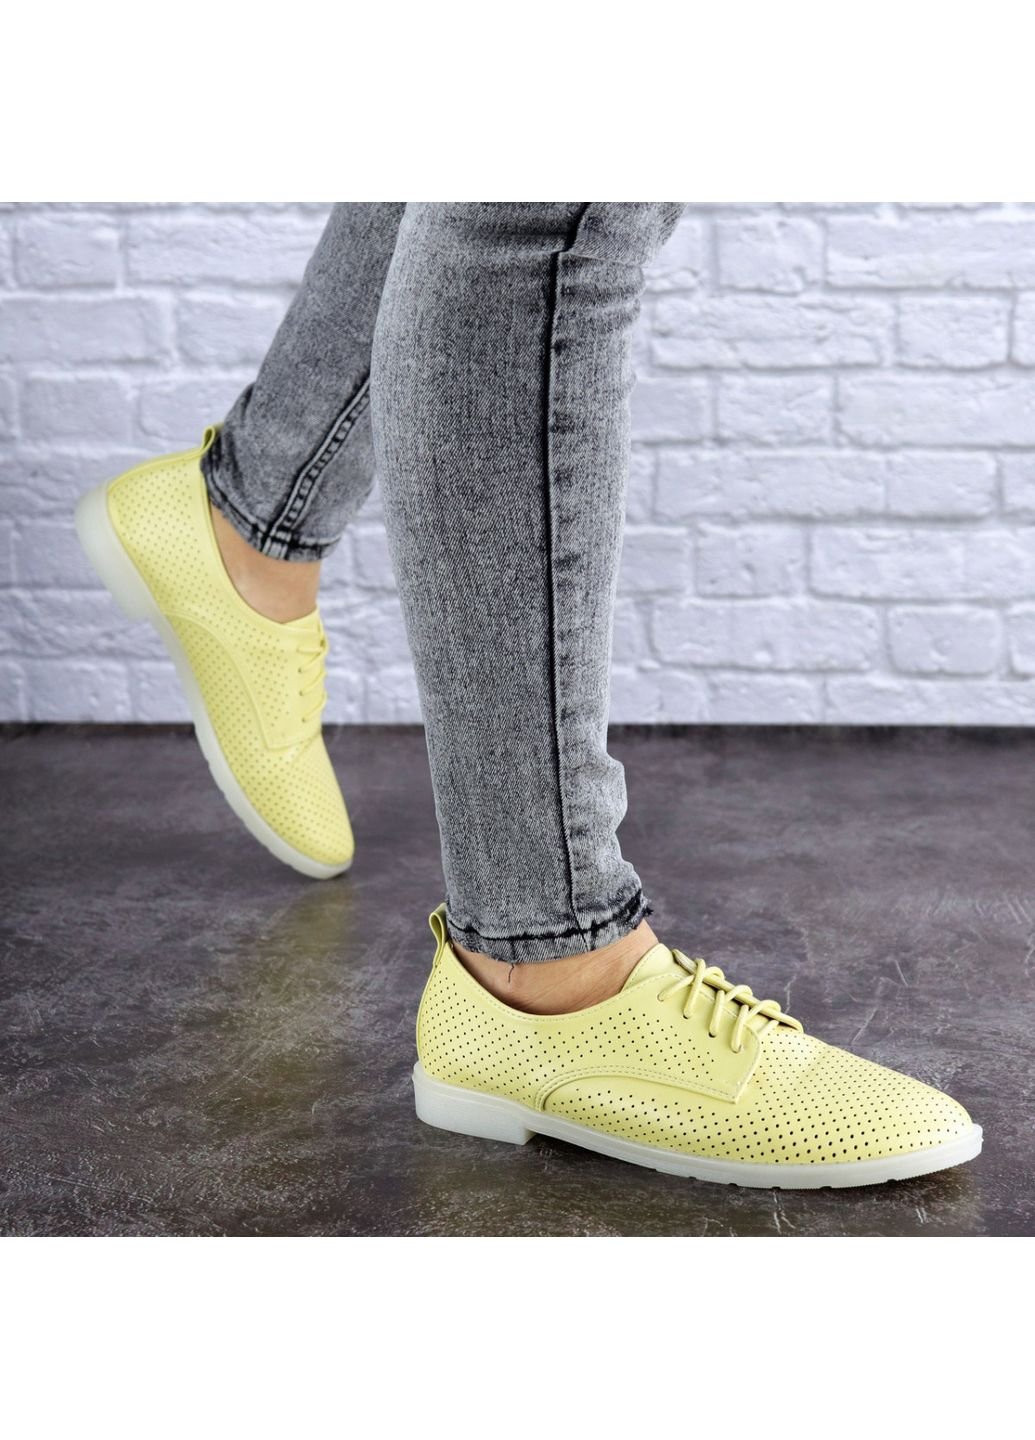 Женские туфли Lippy 1772 39 24,5 см Желтый Fashion